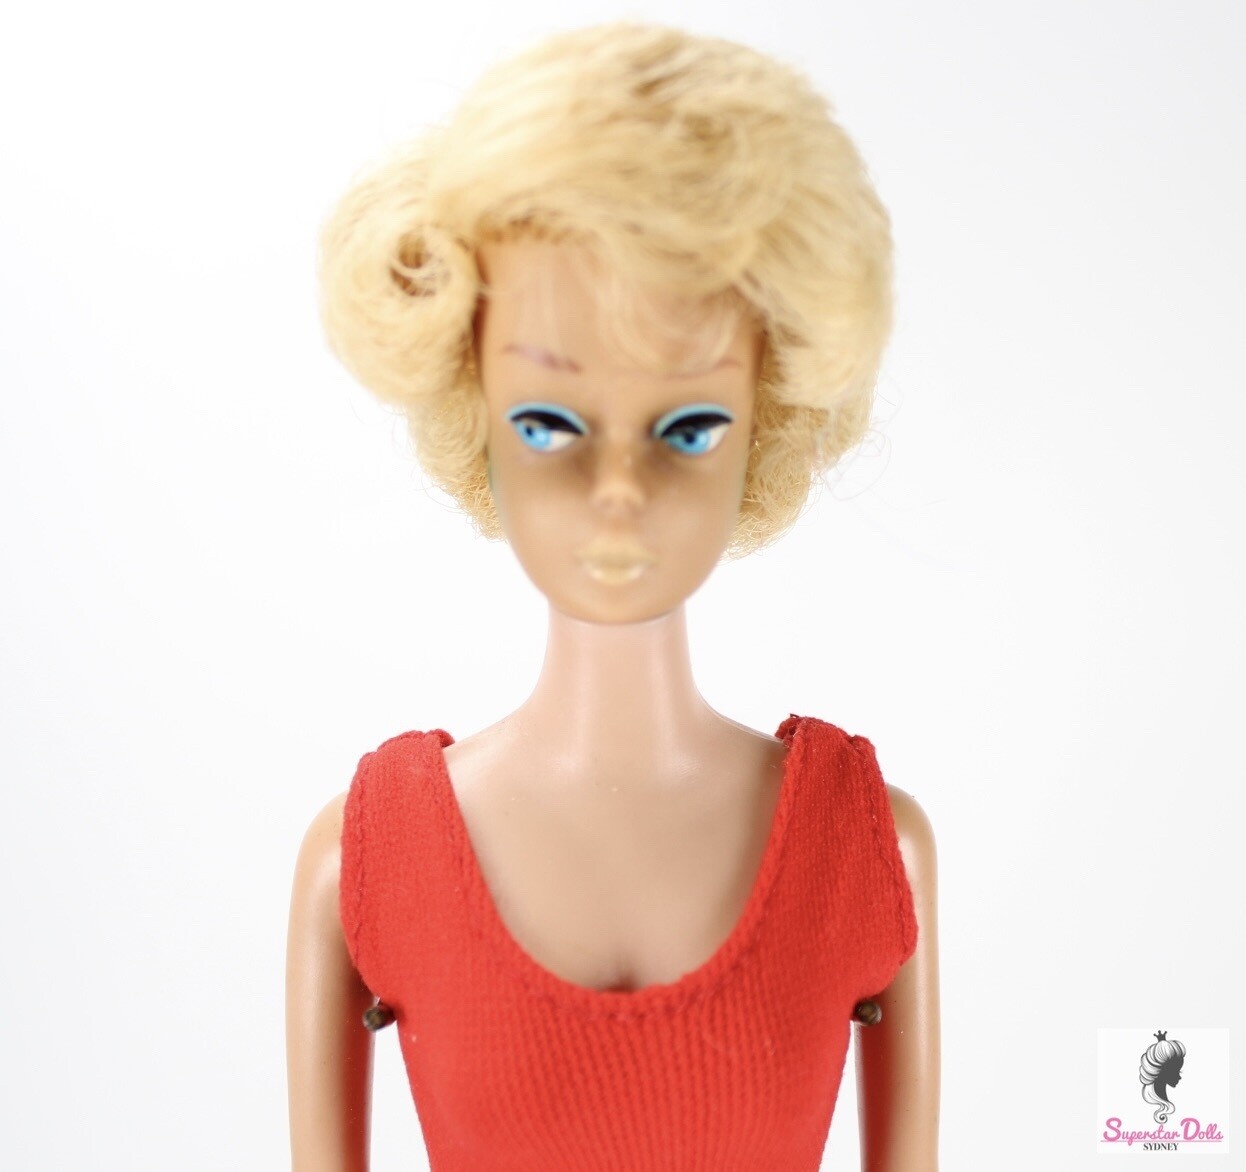 Vintage 1962/64 Blonde Side-Part Bubble-Cut Barbie Doll